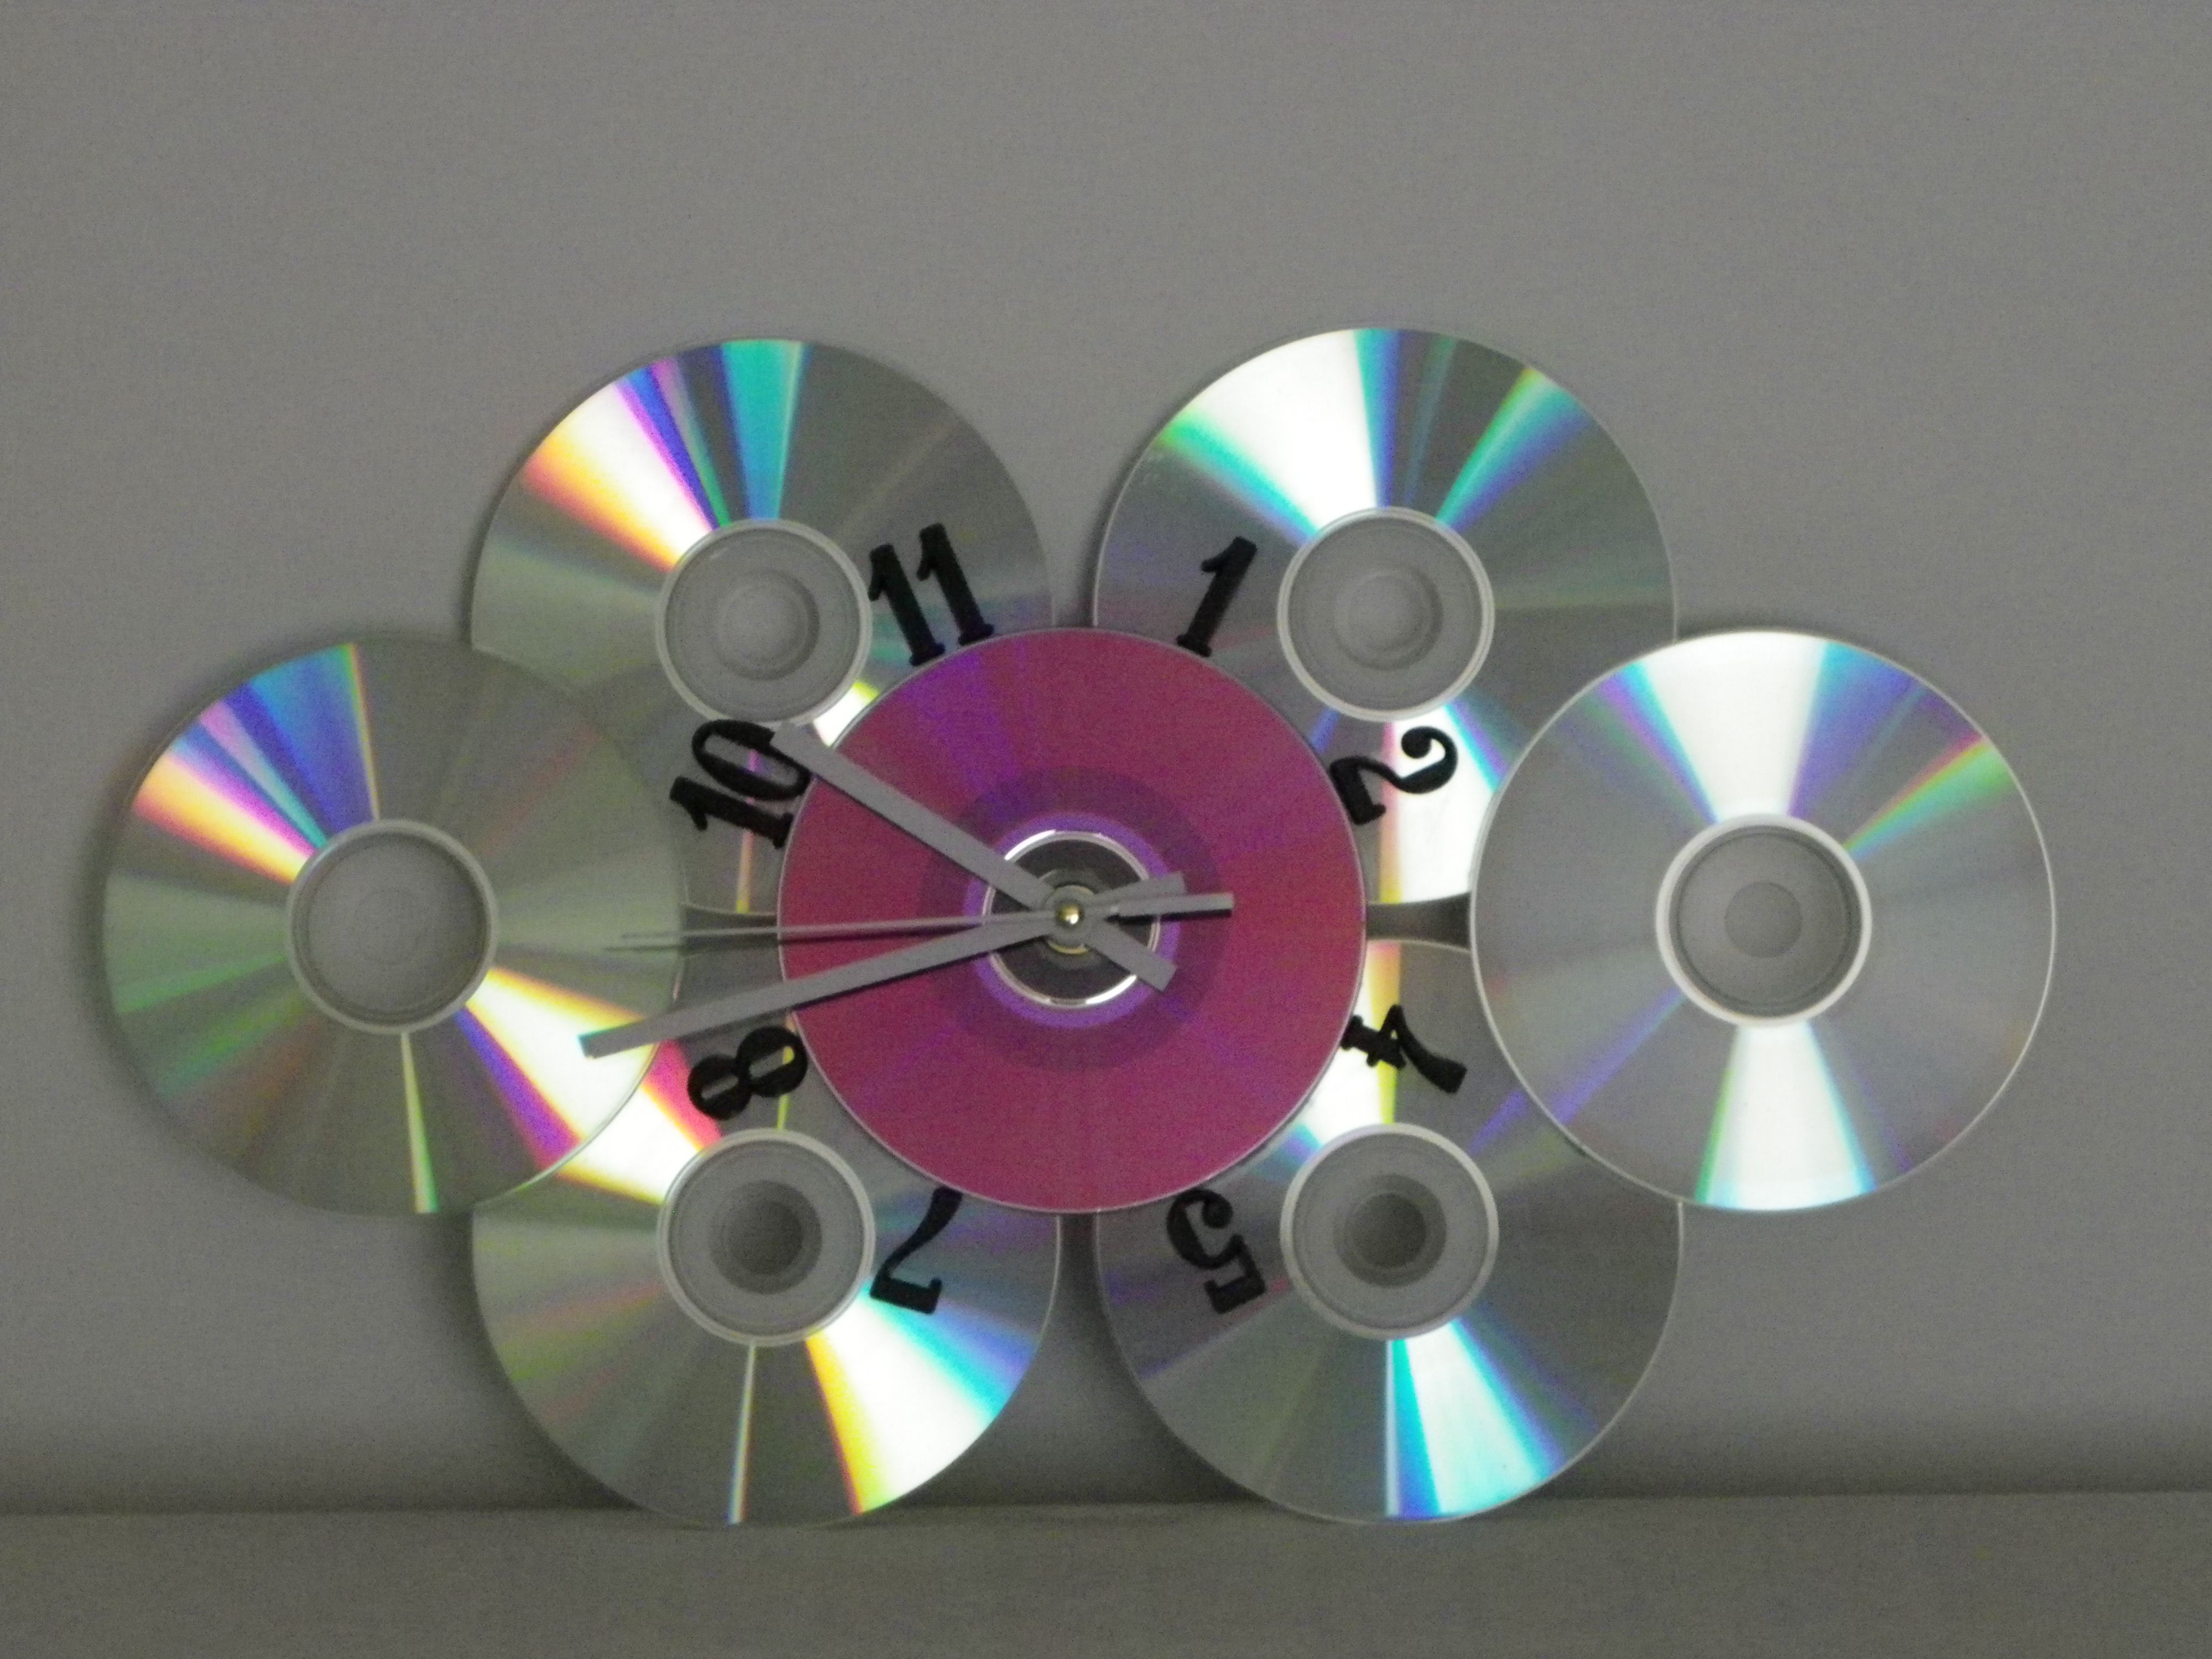 Что можно сделать из дисков своими руками видео: Что и как можно сделать из комп. дисков своими руками (инструкции с видео)?